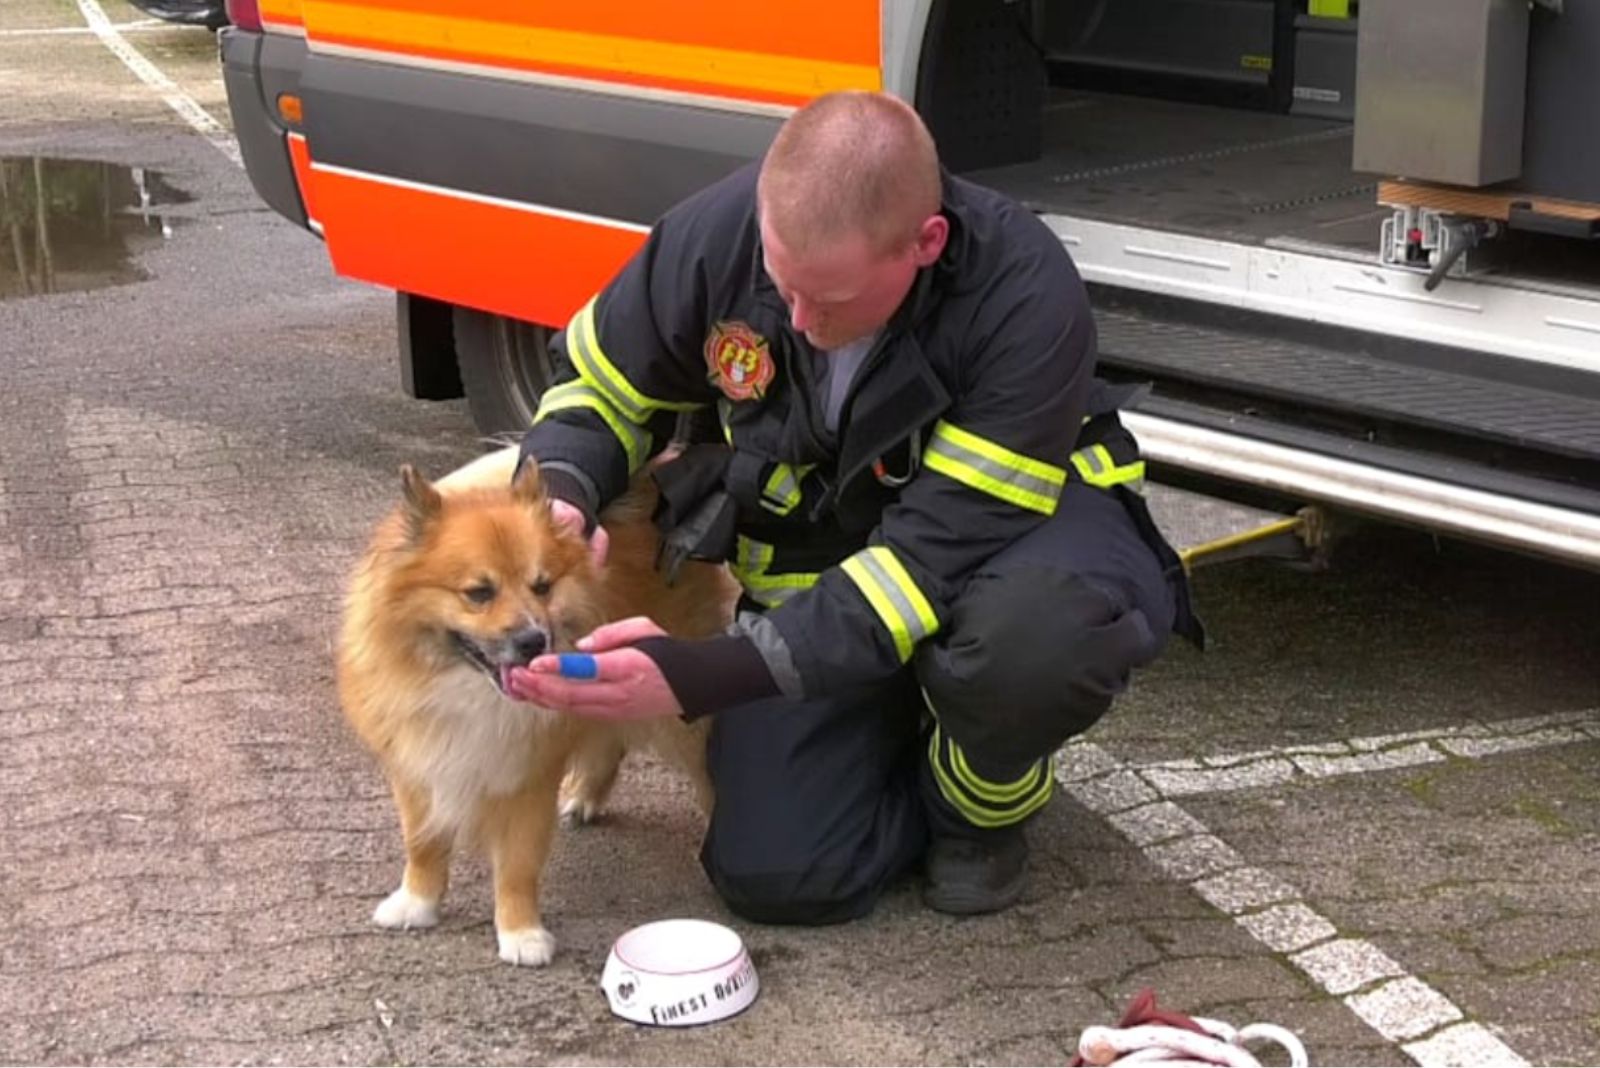 Feuerwehrmann gibt dem Hund Wasser